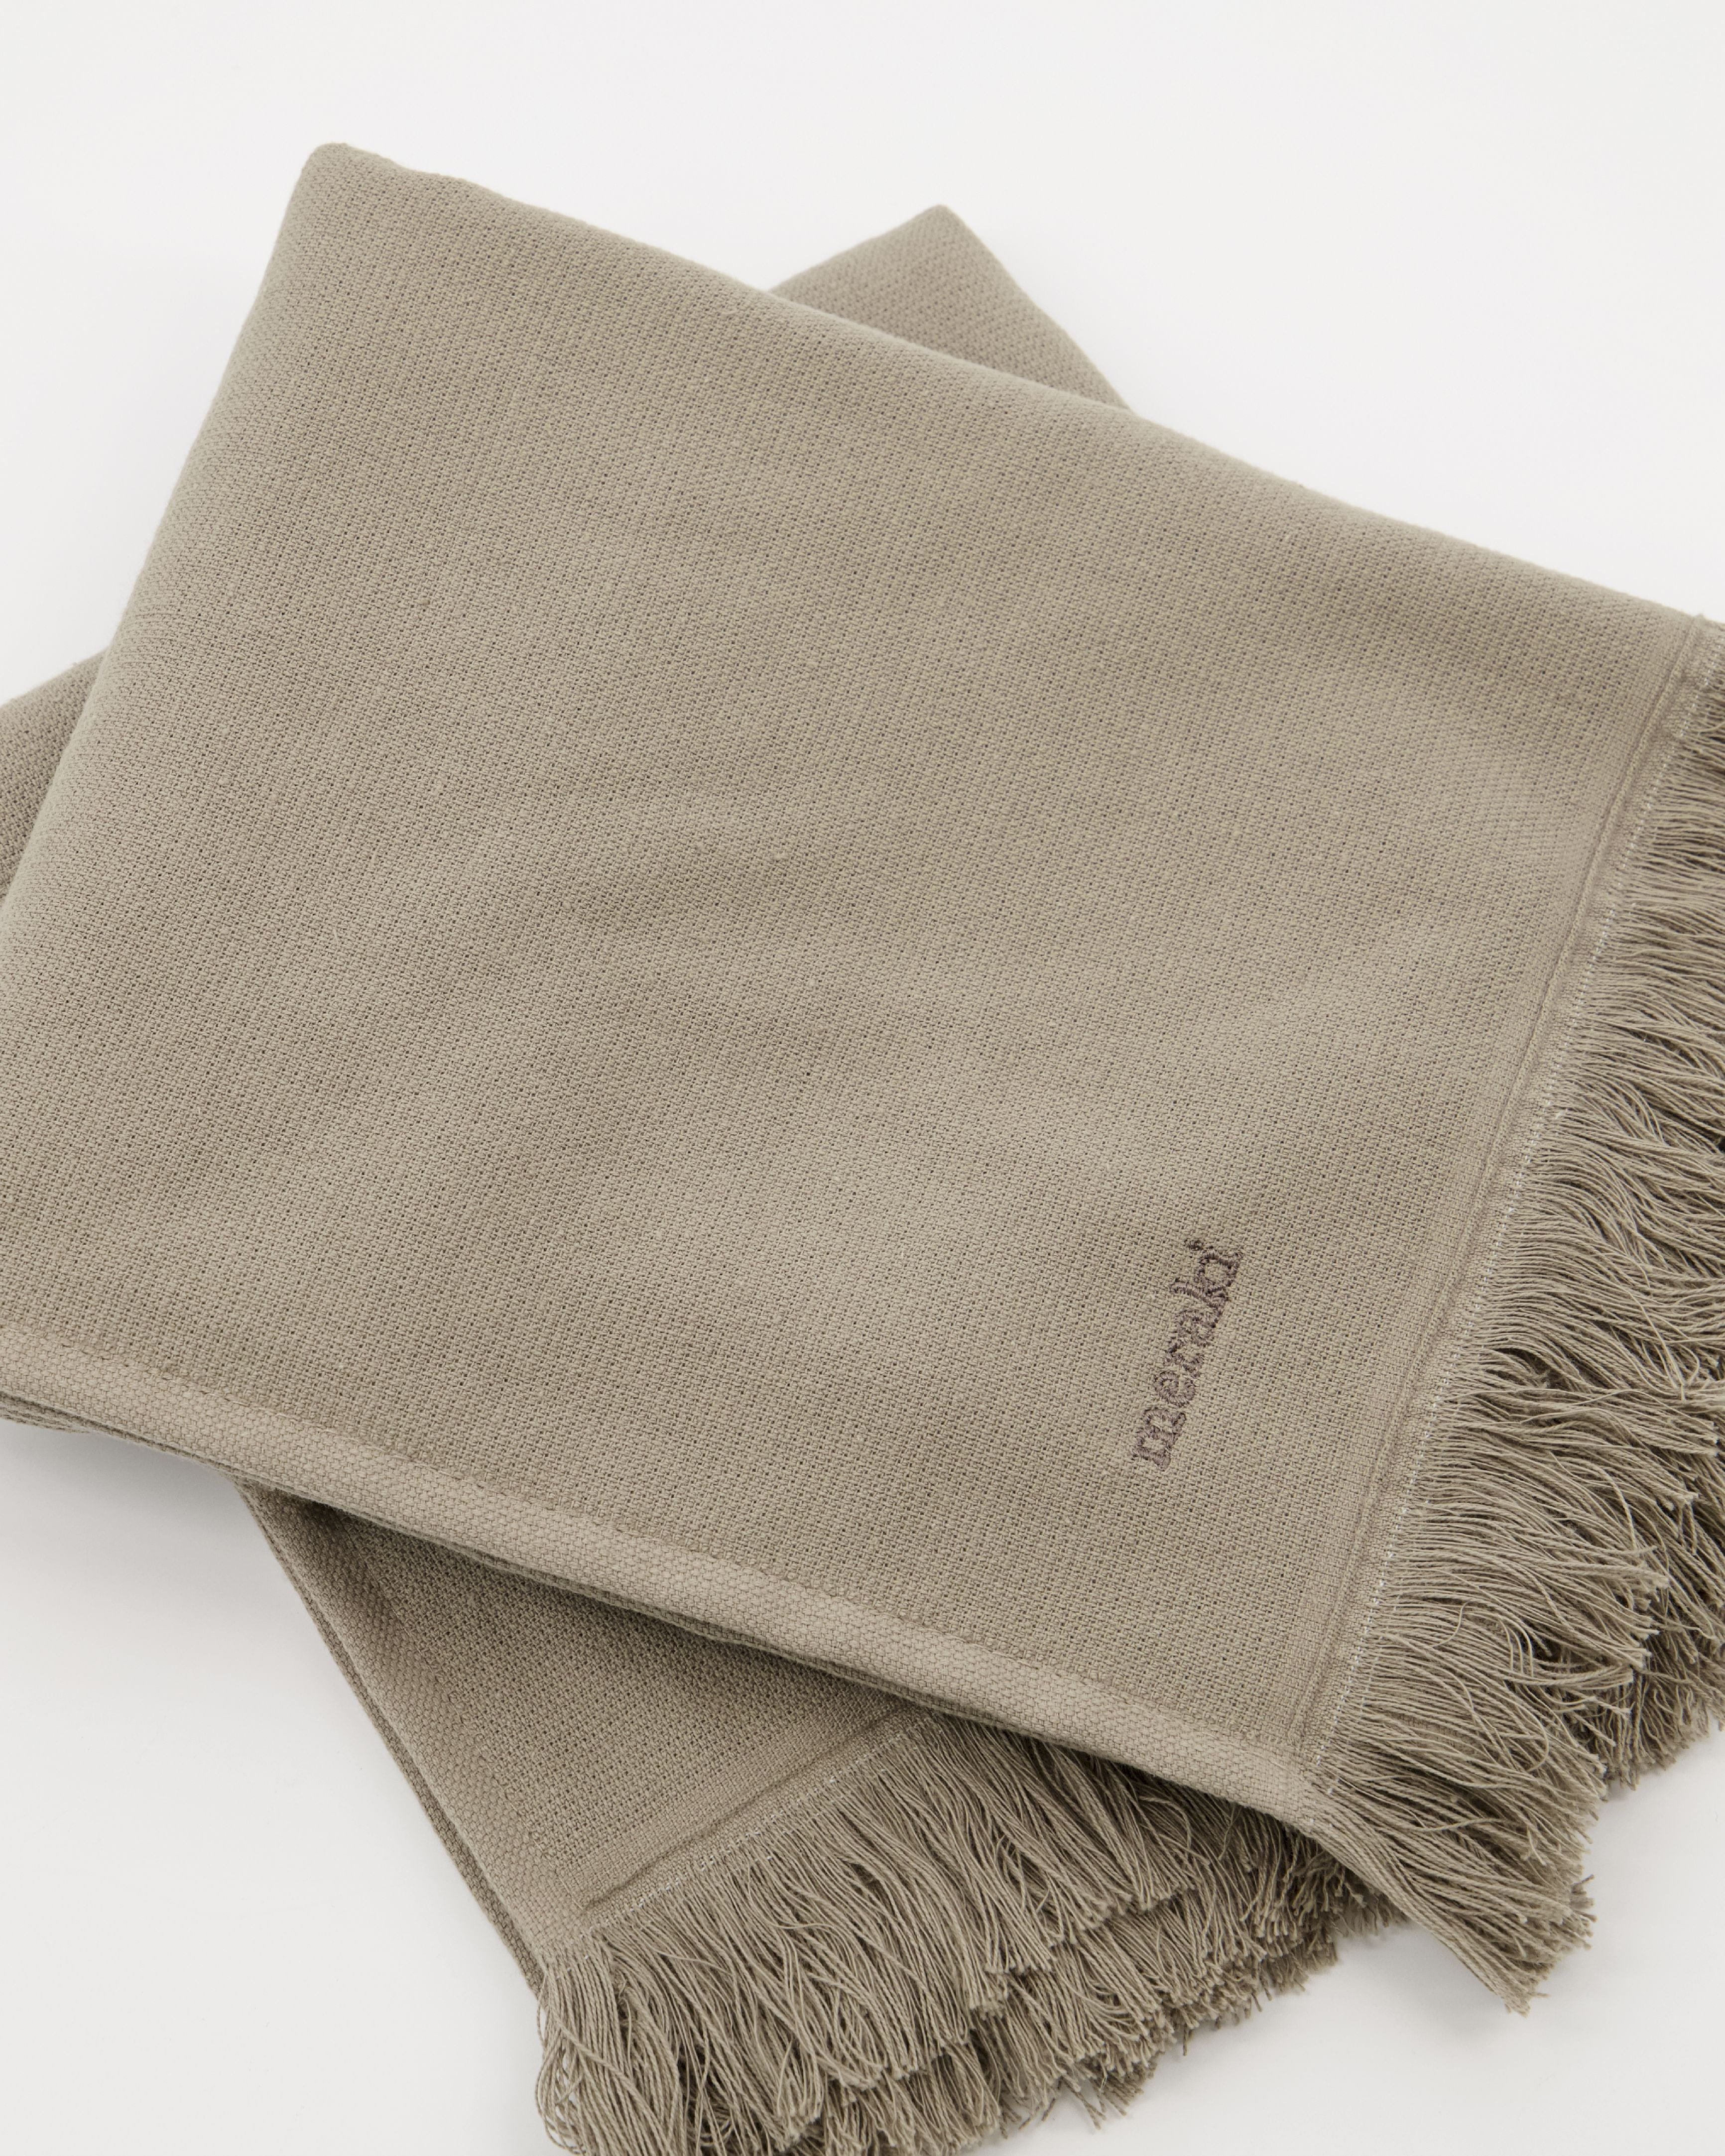 Meraki Lunaria handdoek set van 2, warm grijs